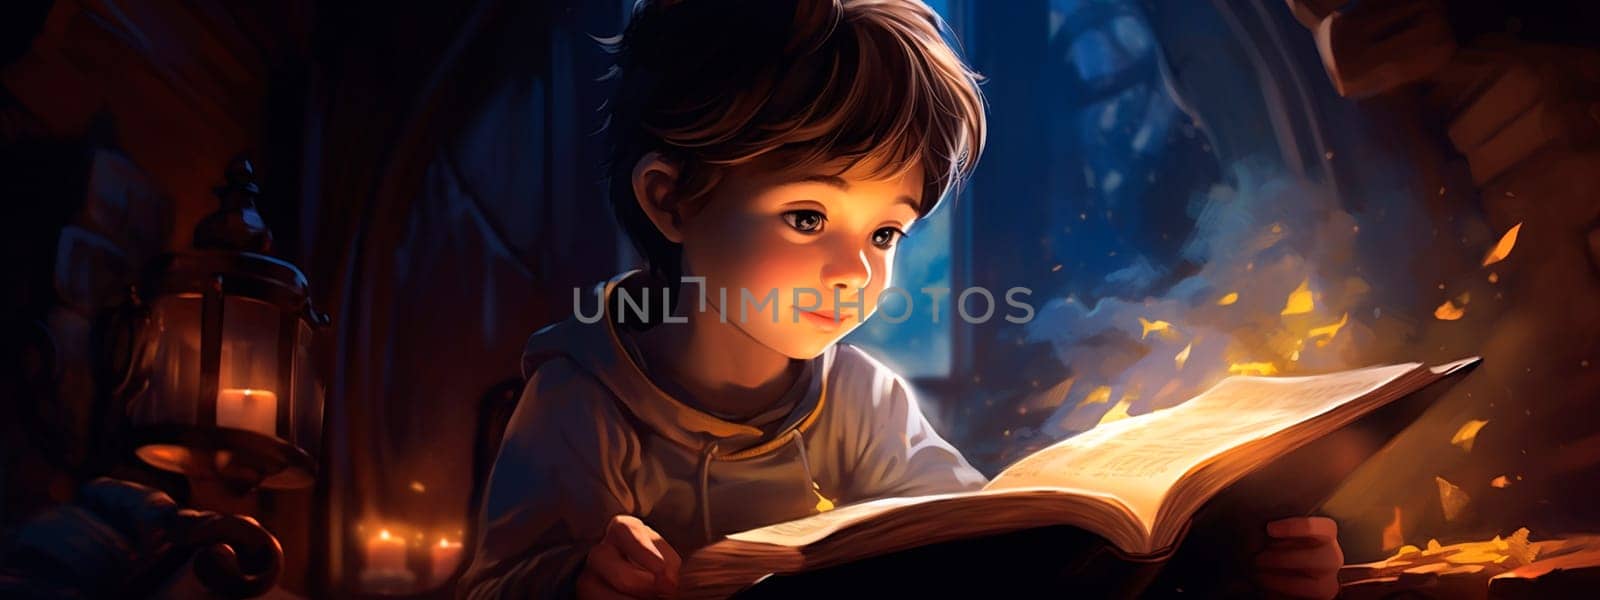 A child reads a book in a dark room. Generative AI, by yanadjana